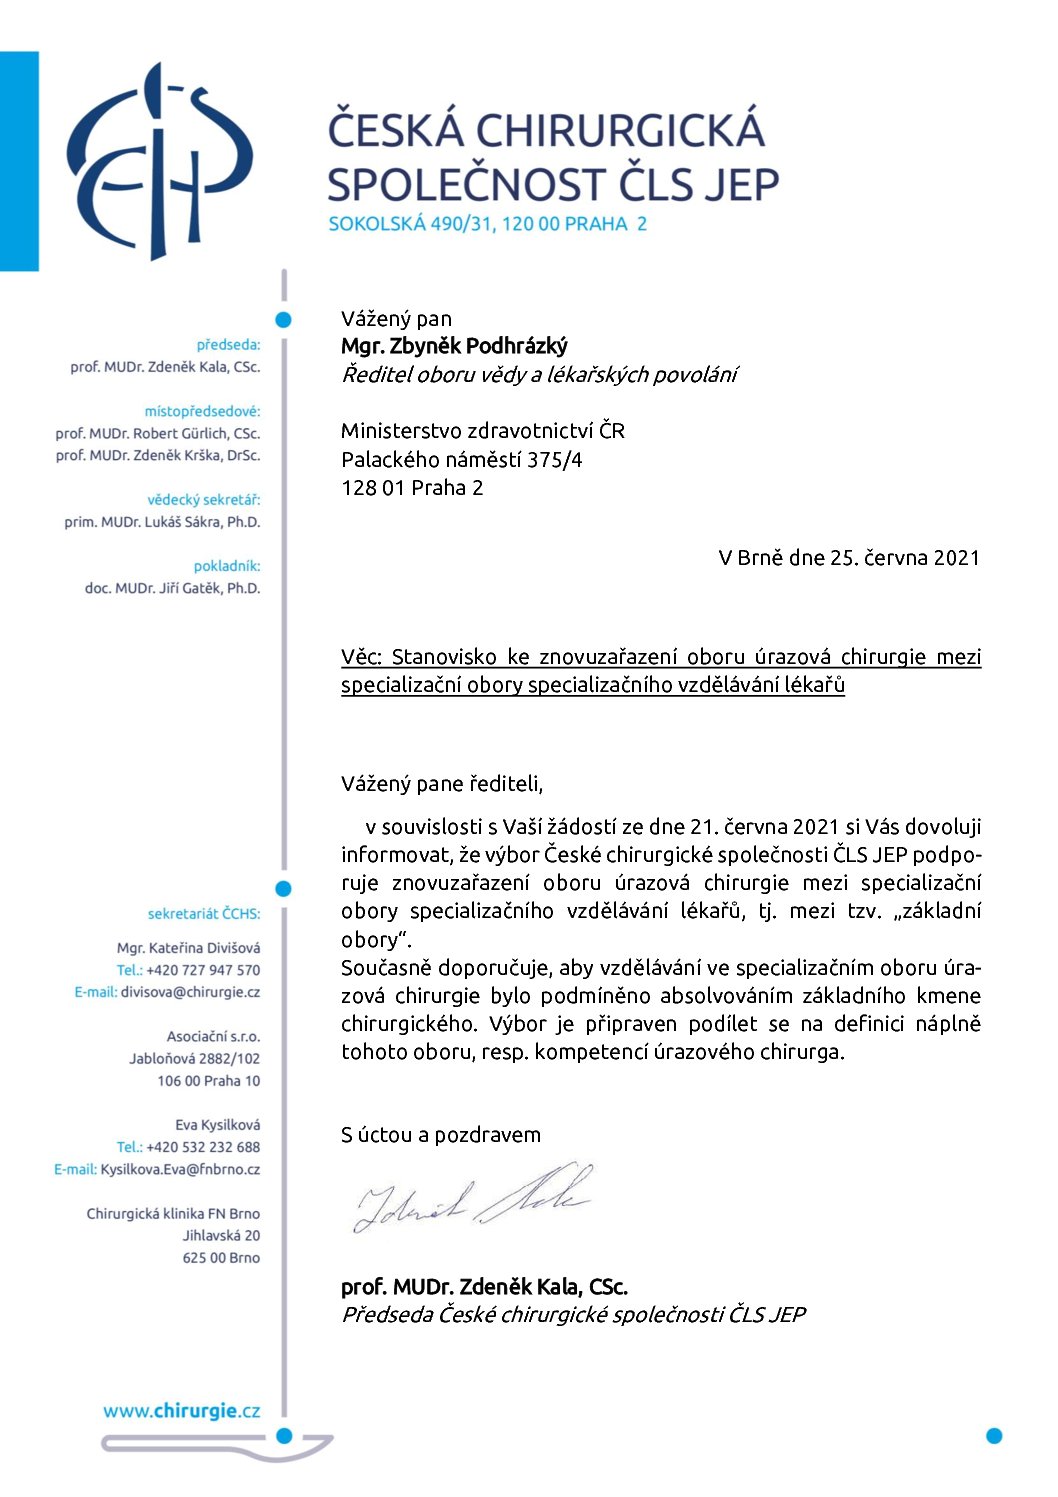 Stanovisko výboru ČCHS ČLS JEP – Znovuzařazení oboru Úrazová chirurgie mezi základní obory (25. 6. 2021)